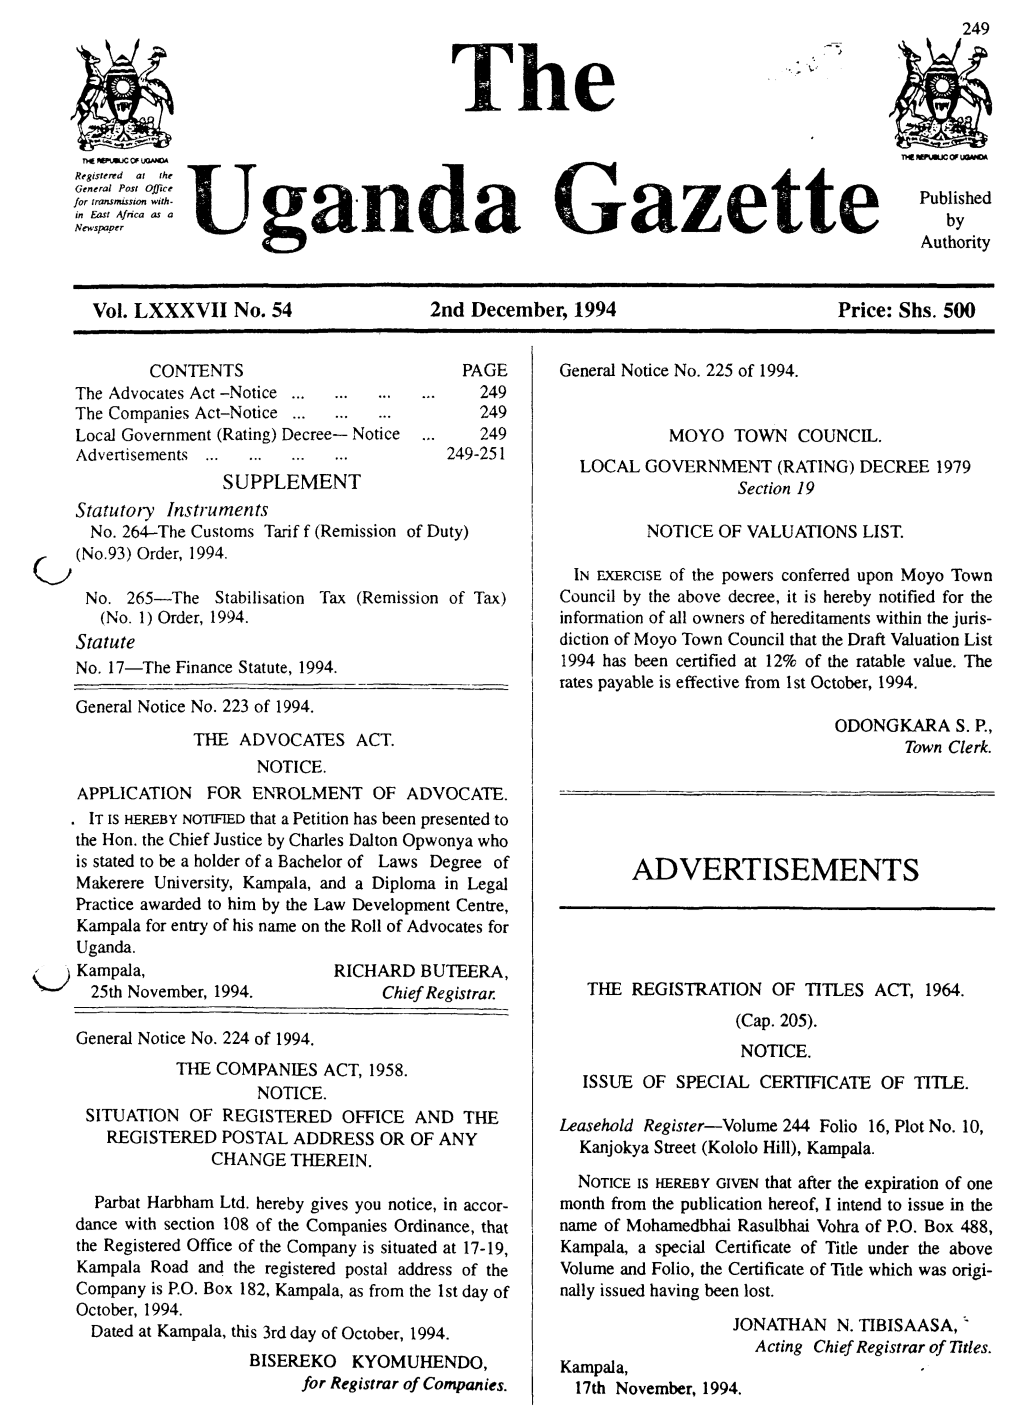 Gs Uganda Uazette Authority